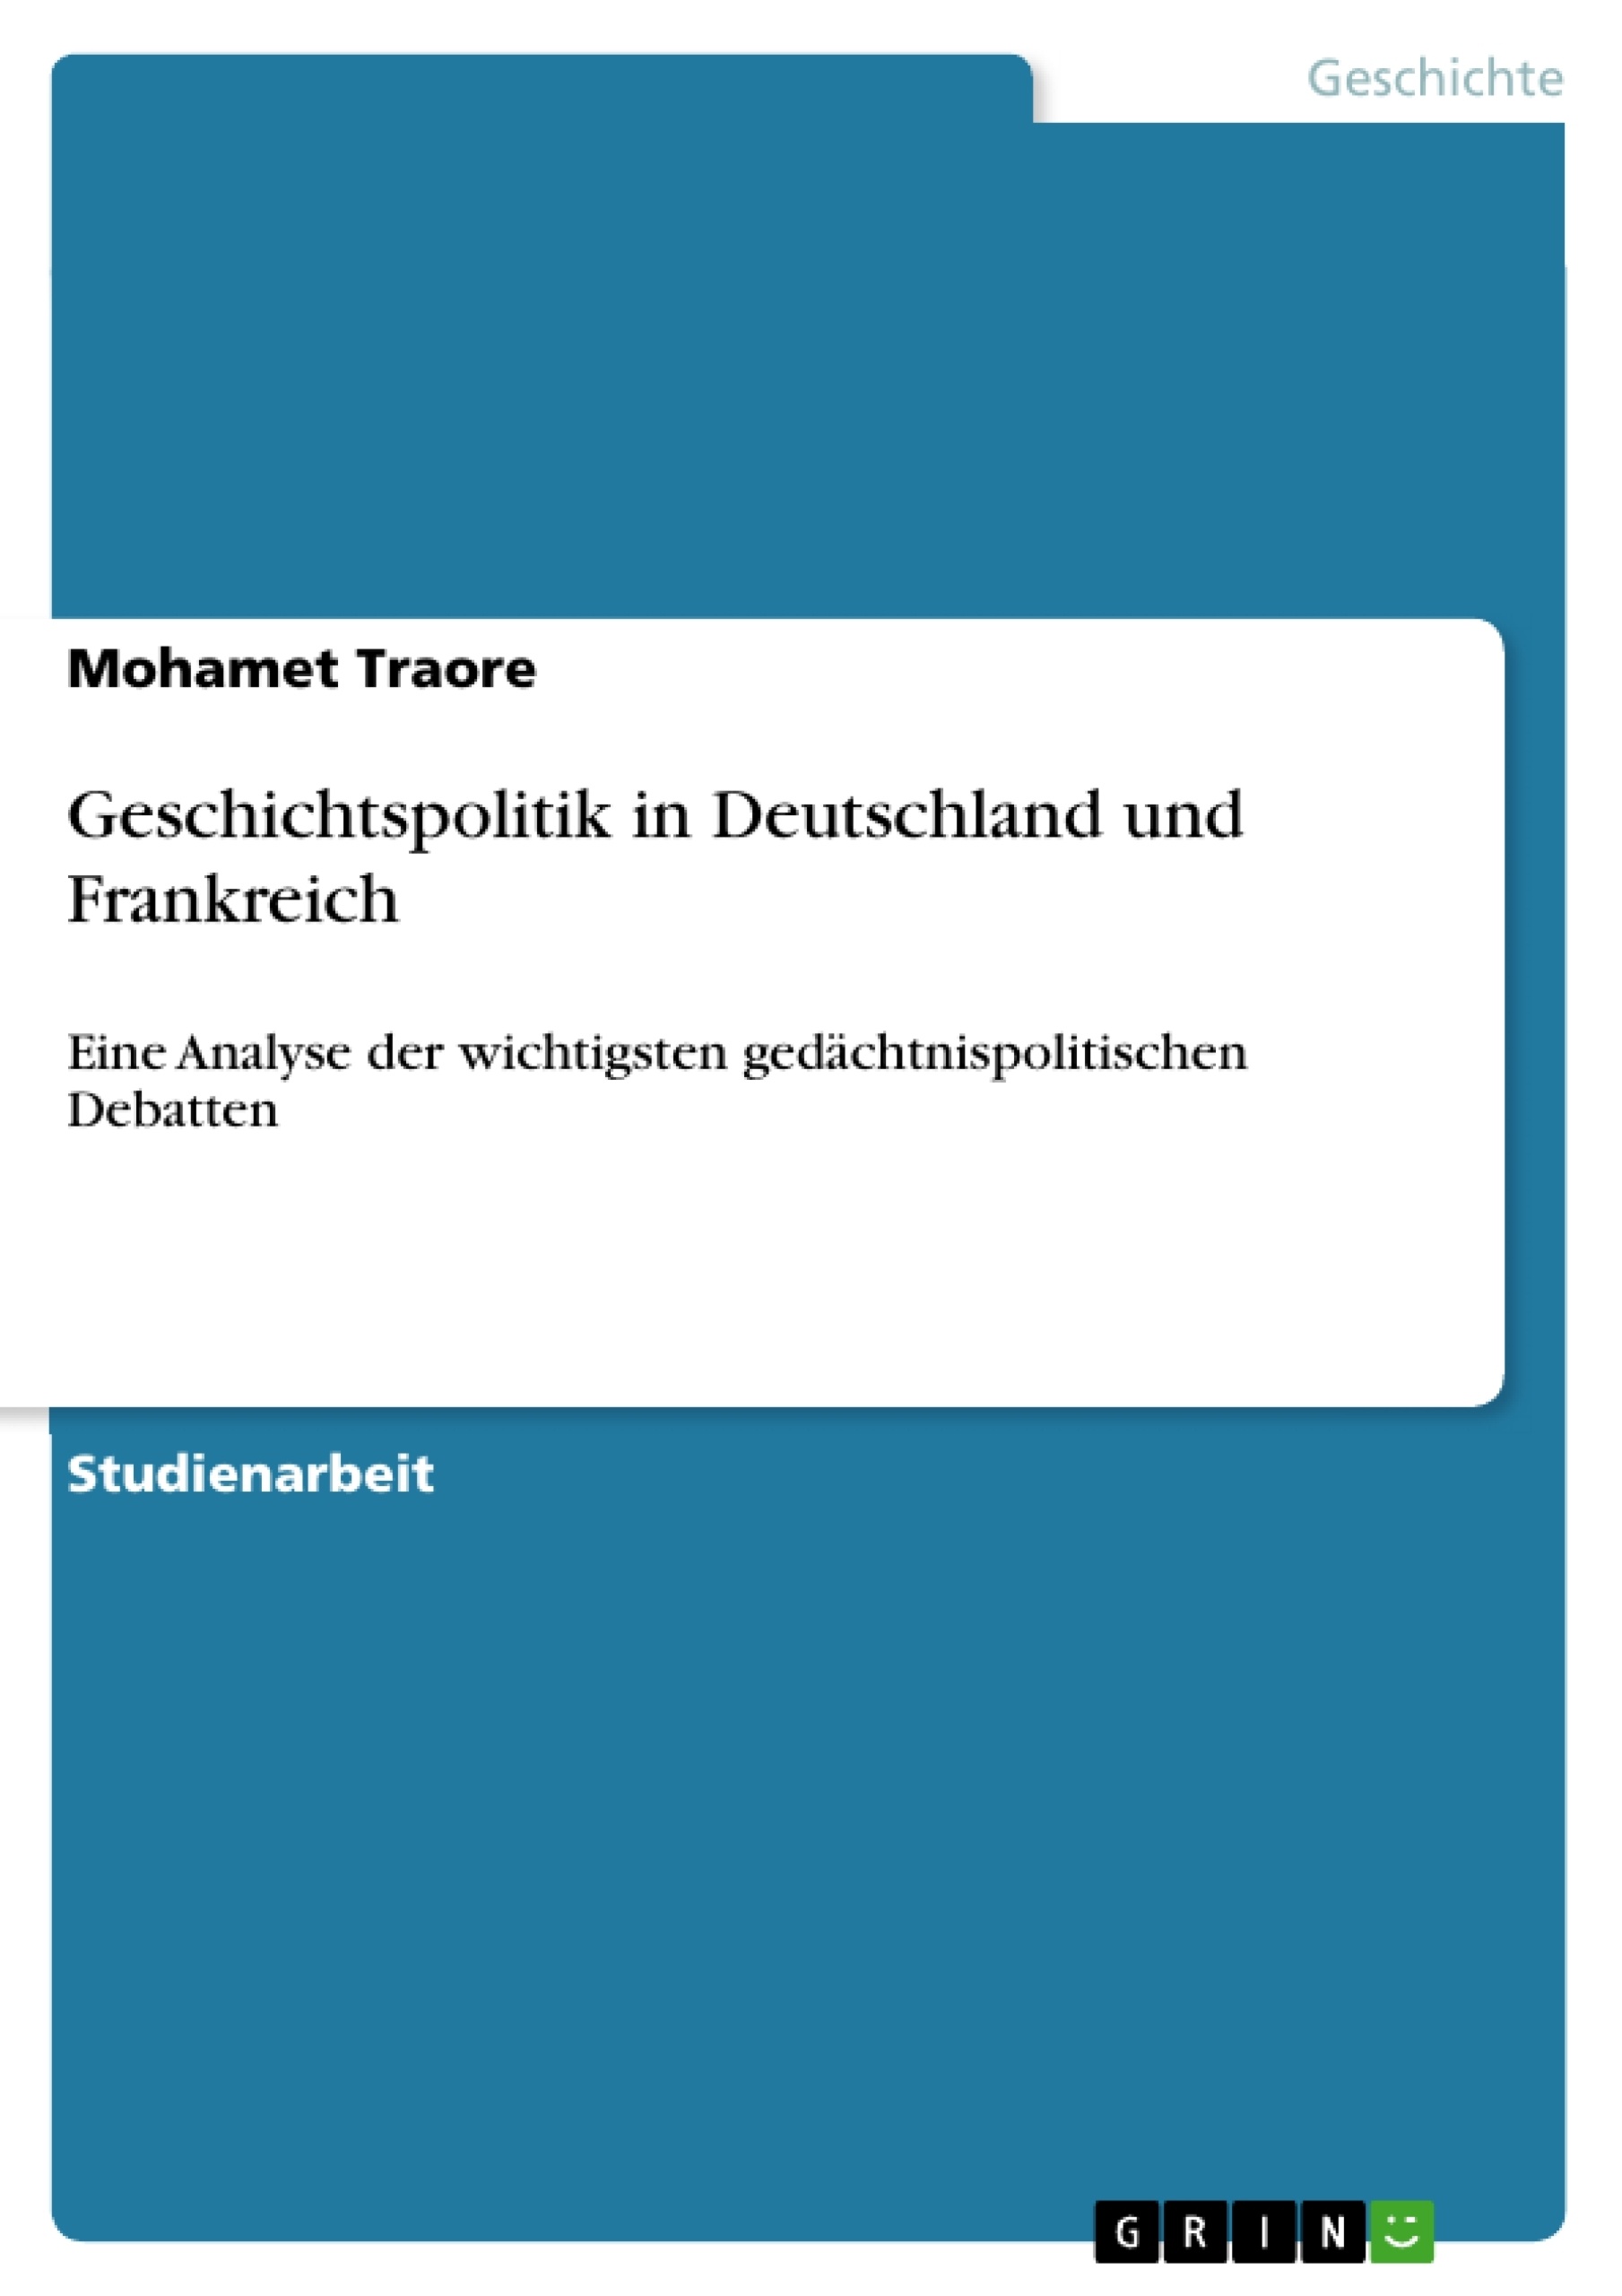 Título: Geschichtspolitik in Deutschland und Frankreich